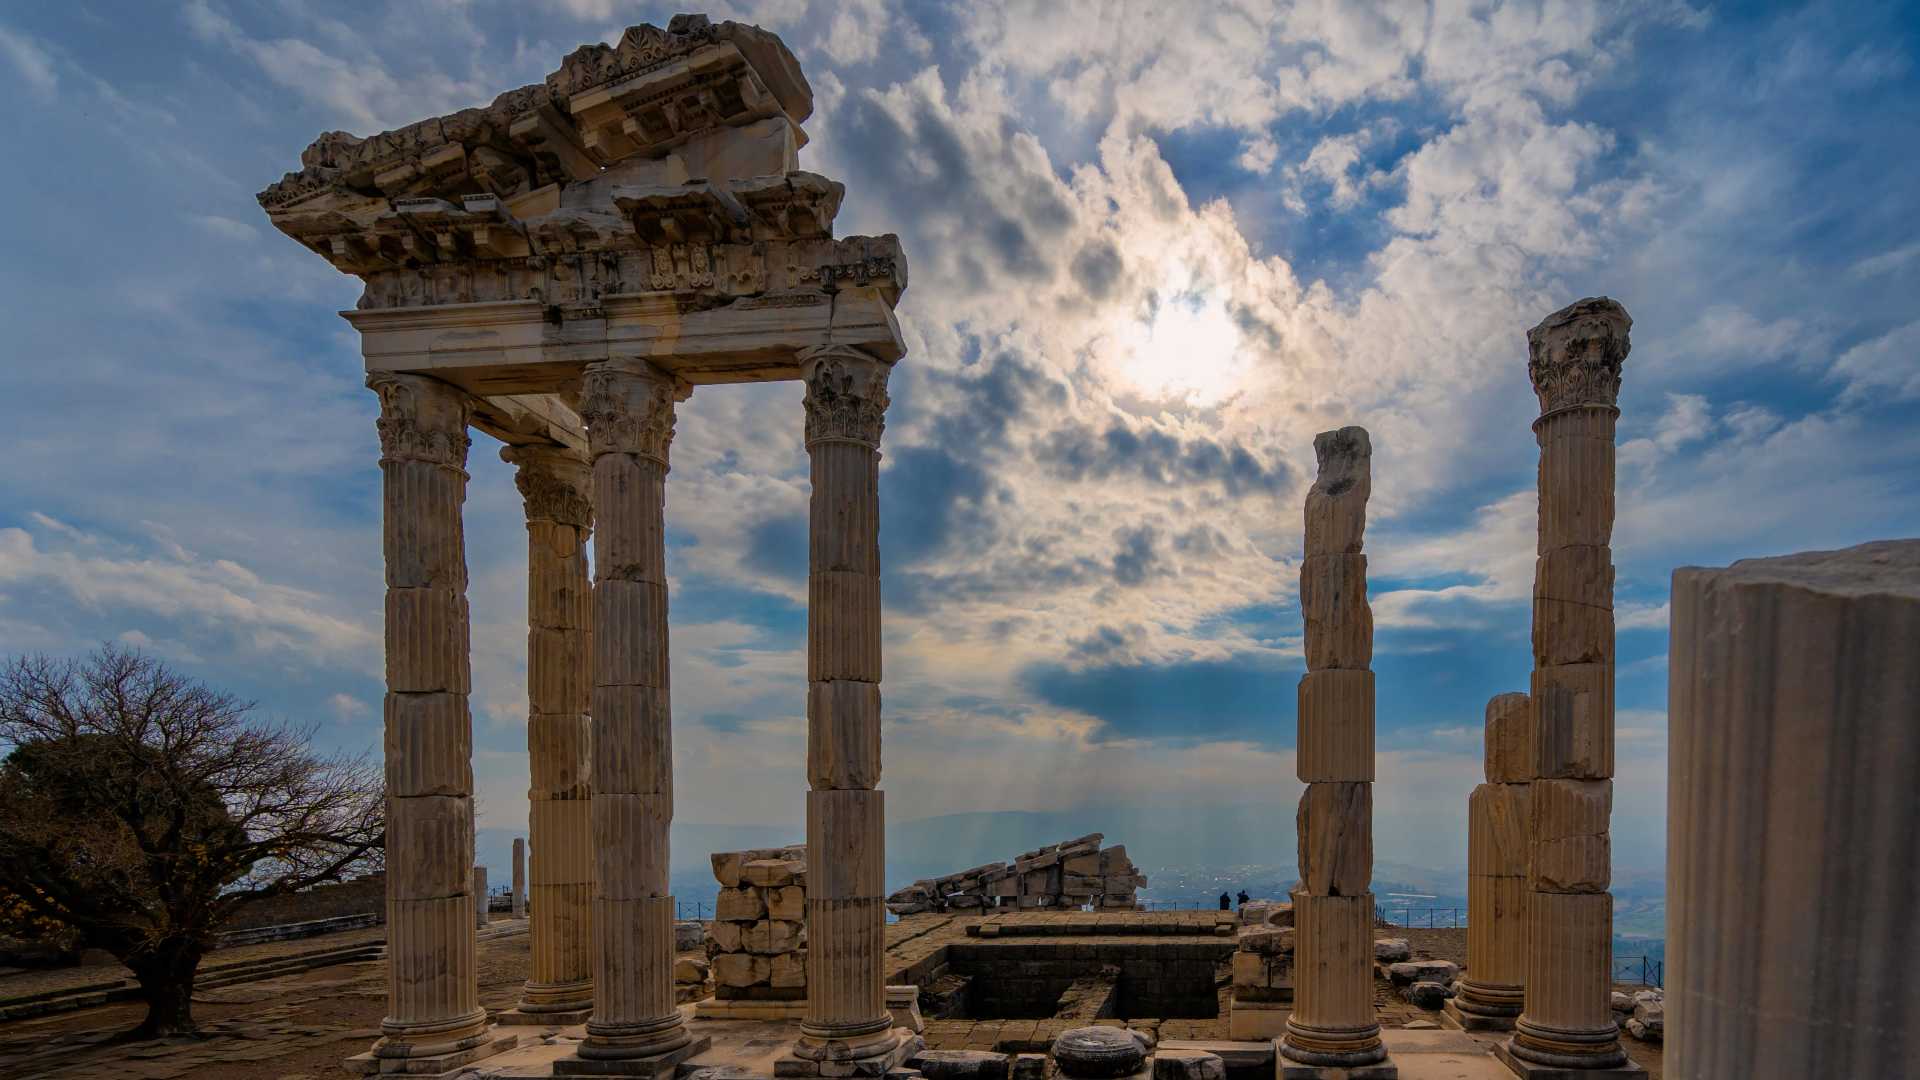 Acropolis - Pergamon